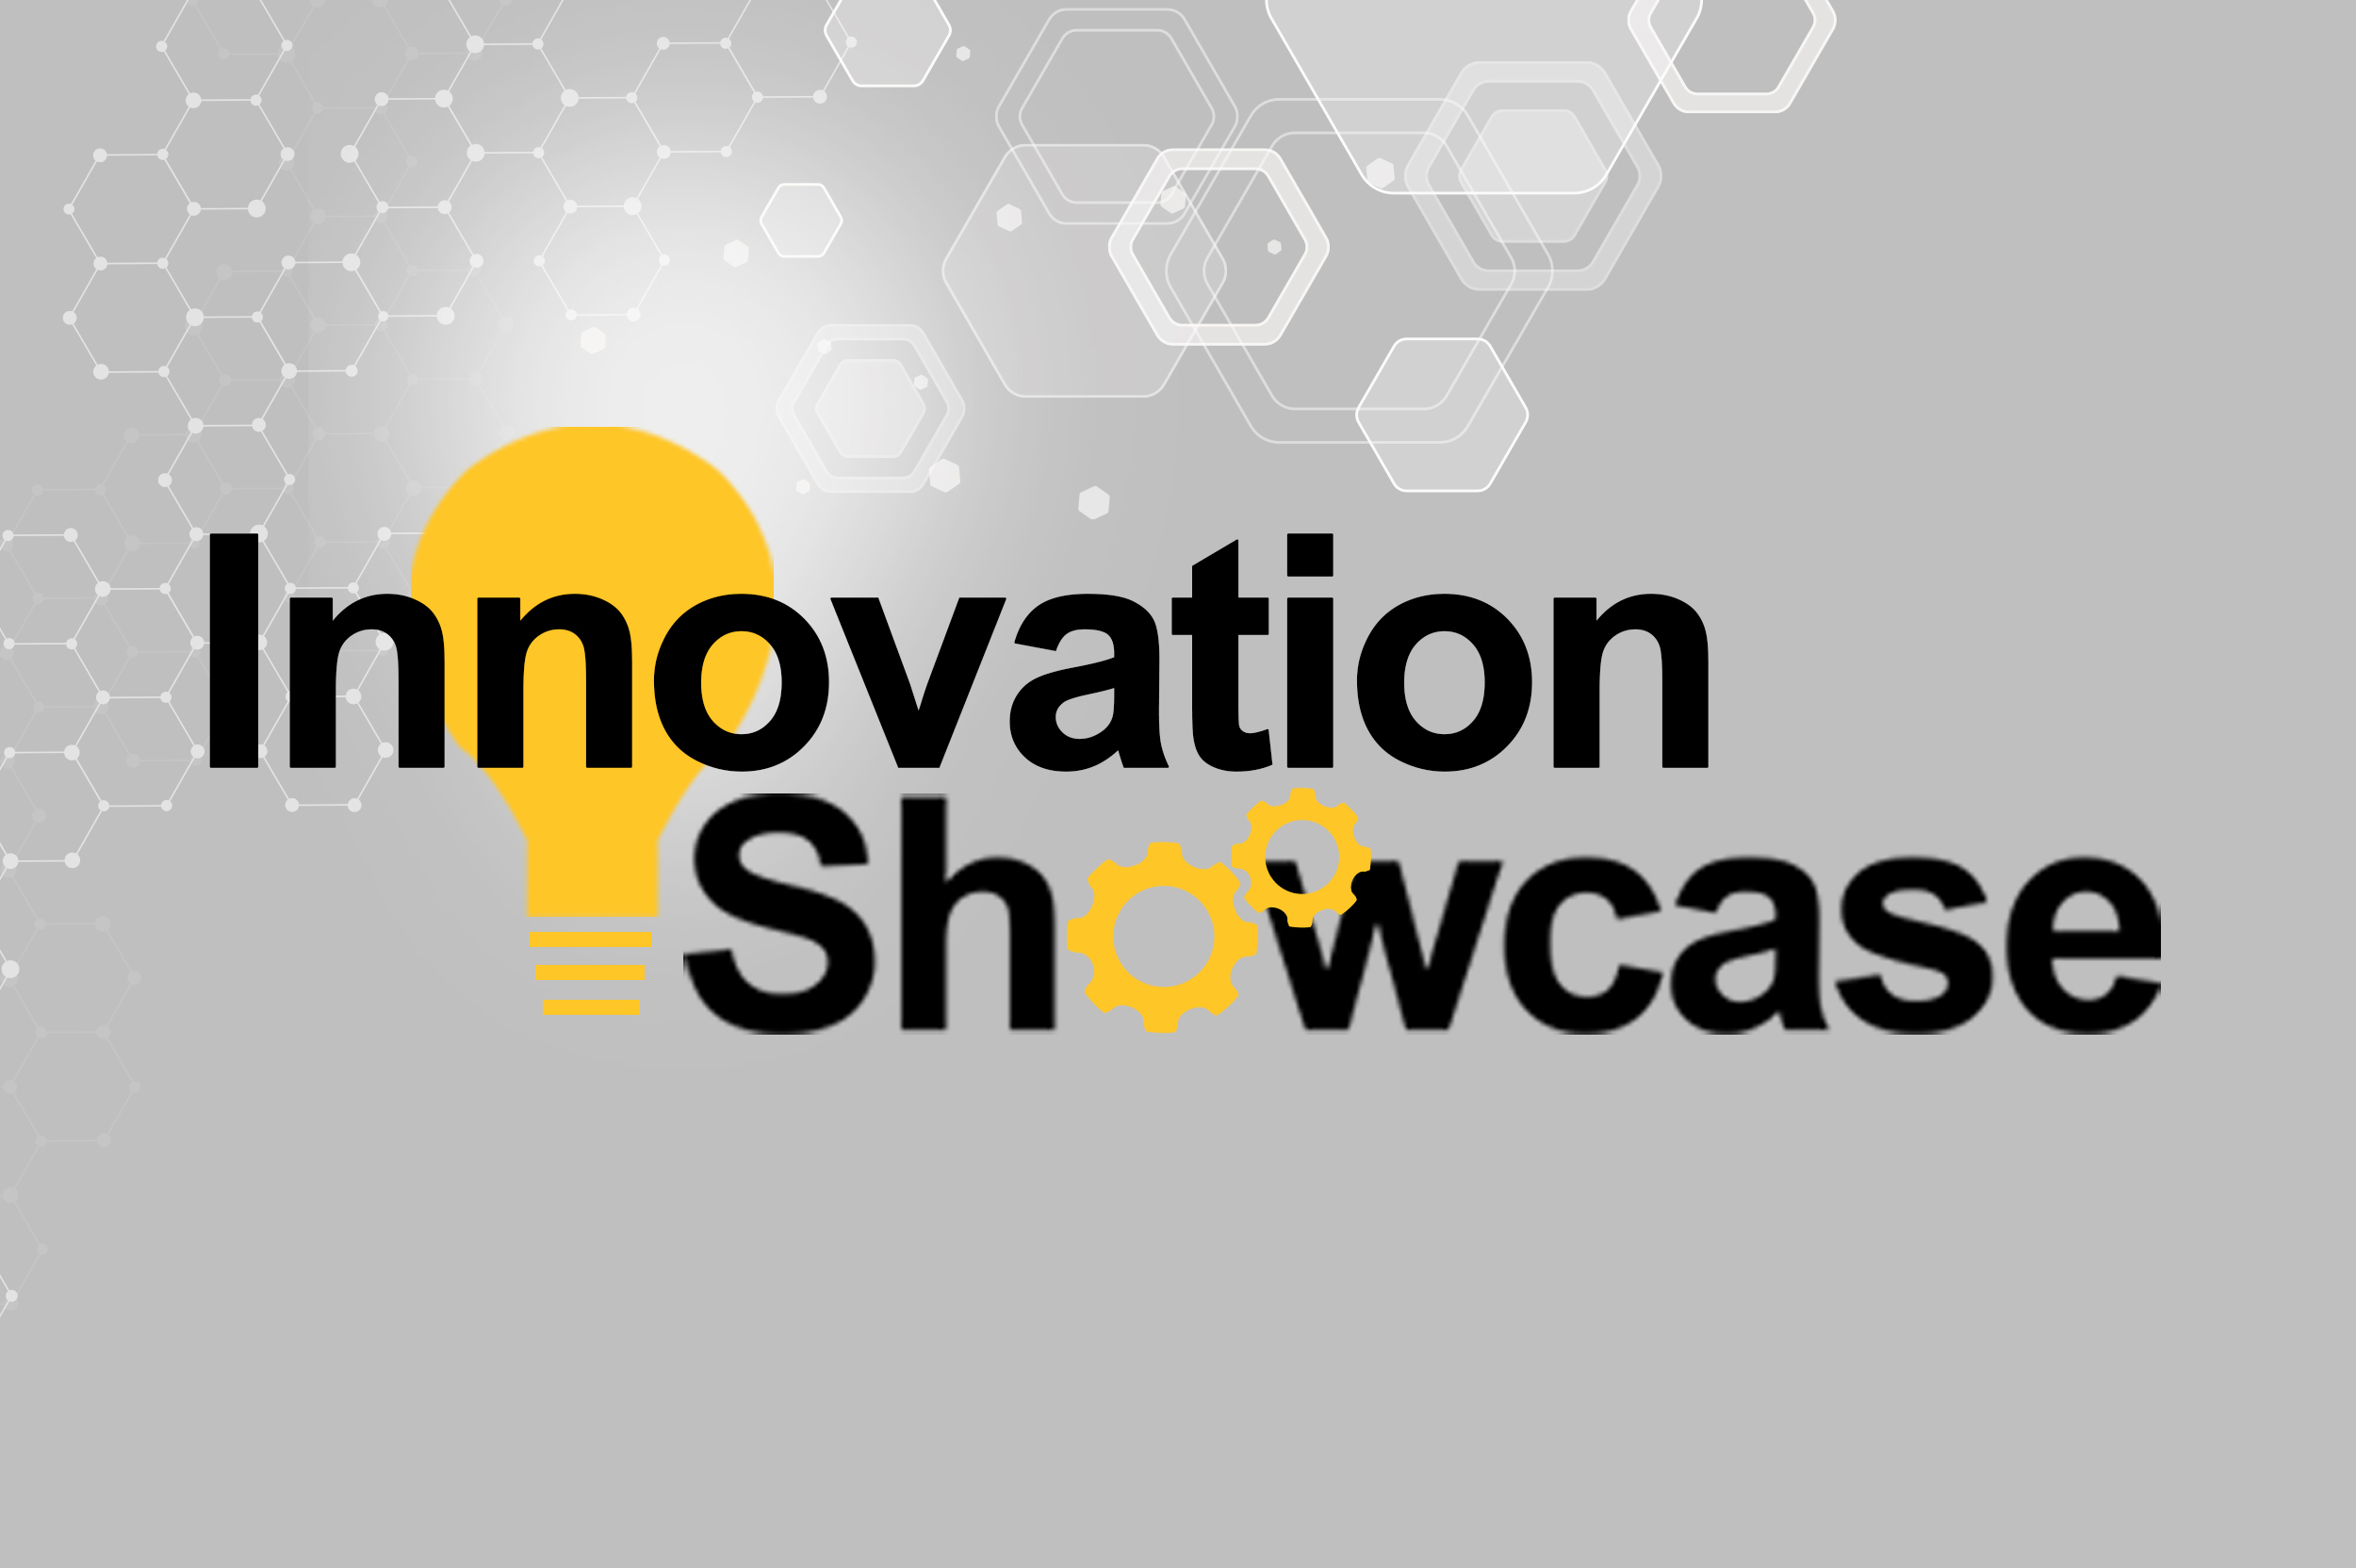 Innovation Showcase